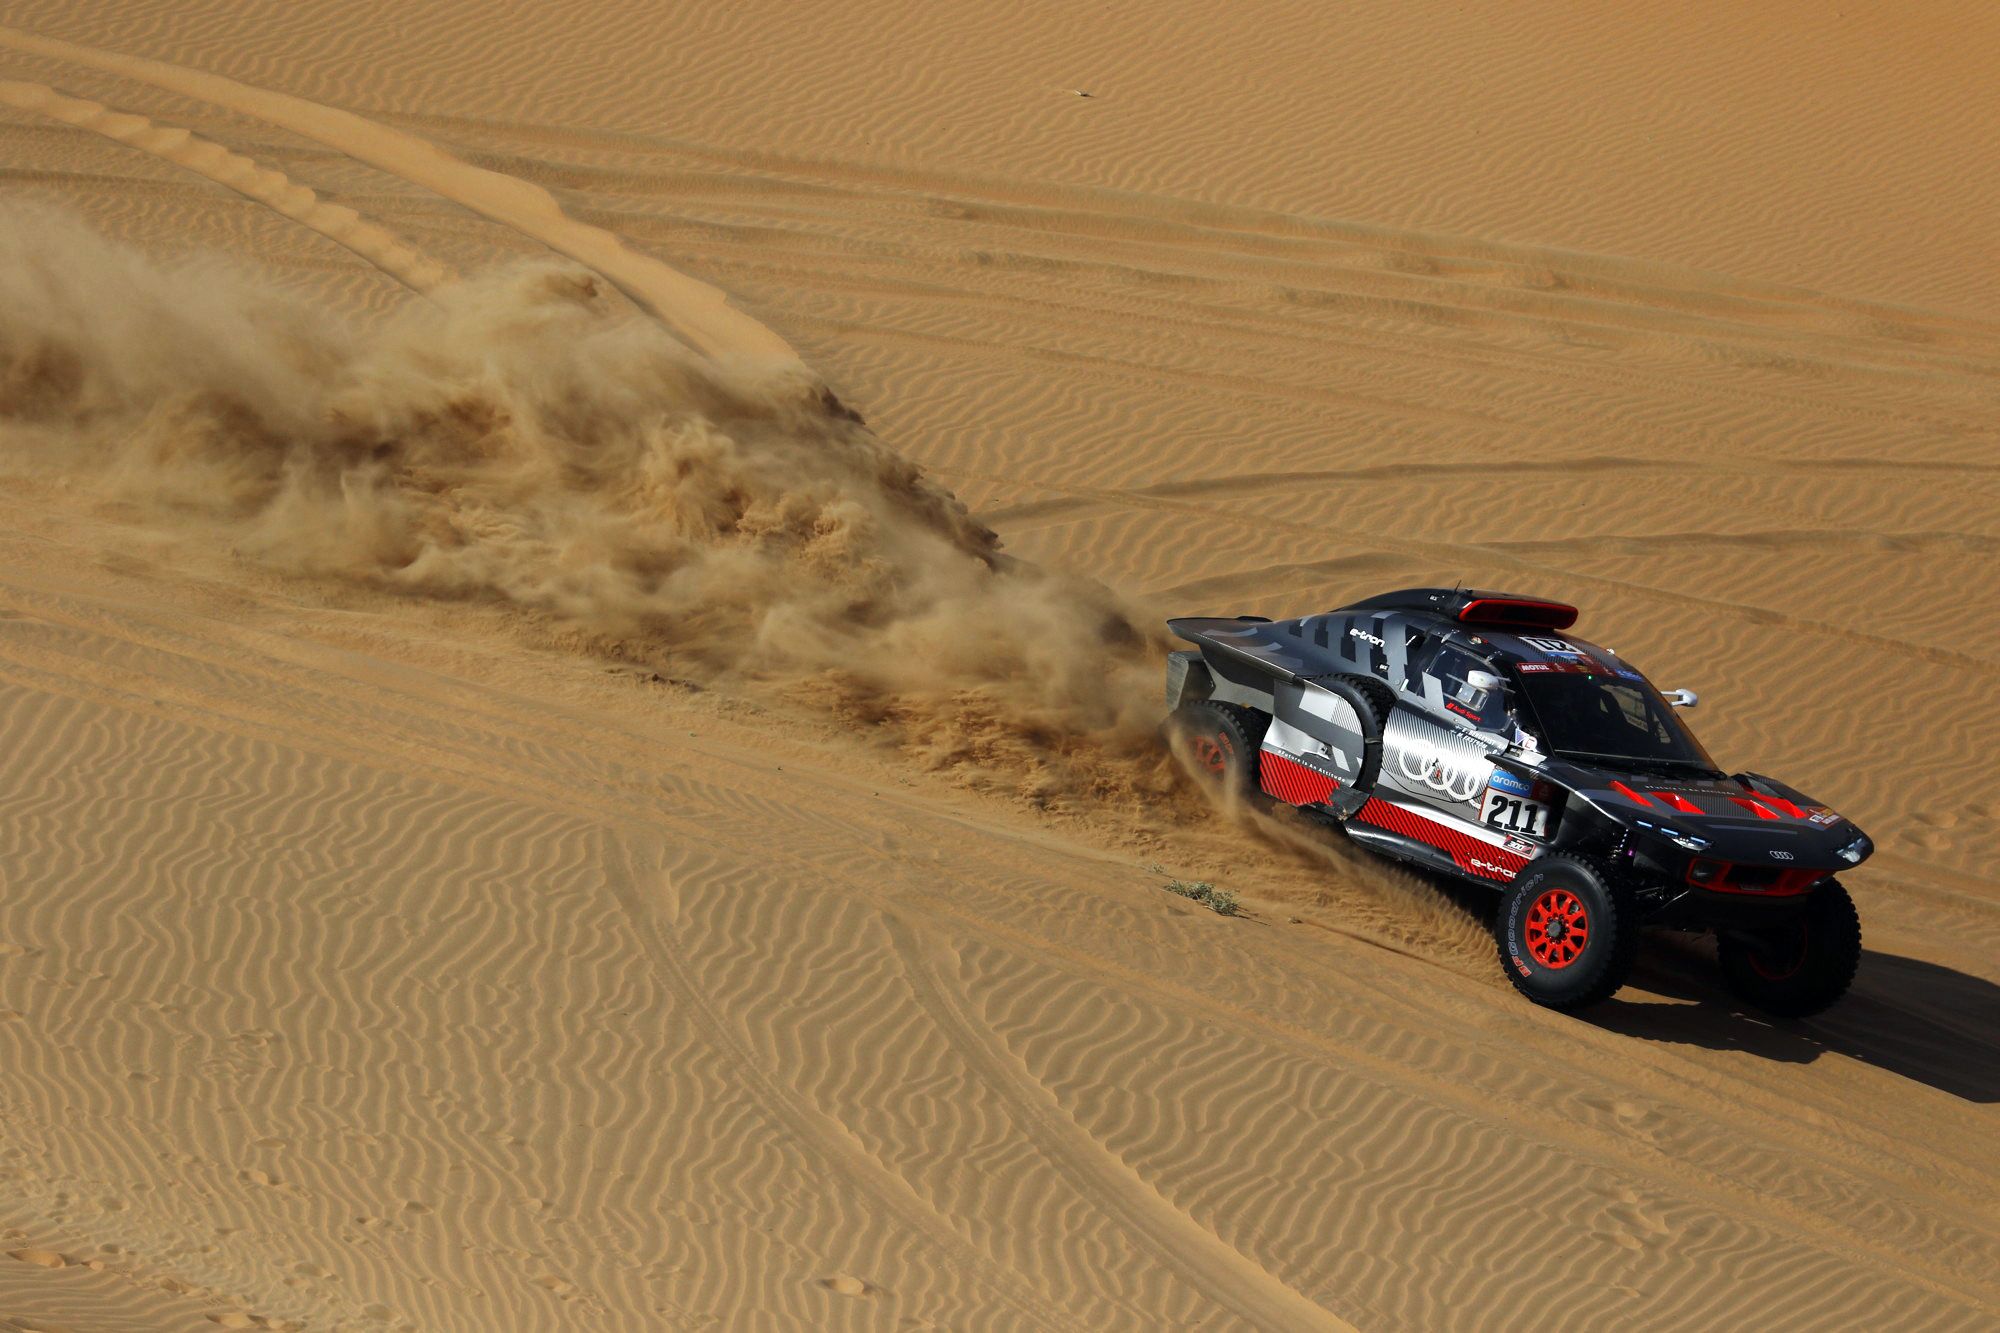 Dakar Rally (163444752).jpg